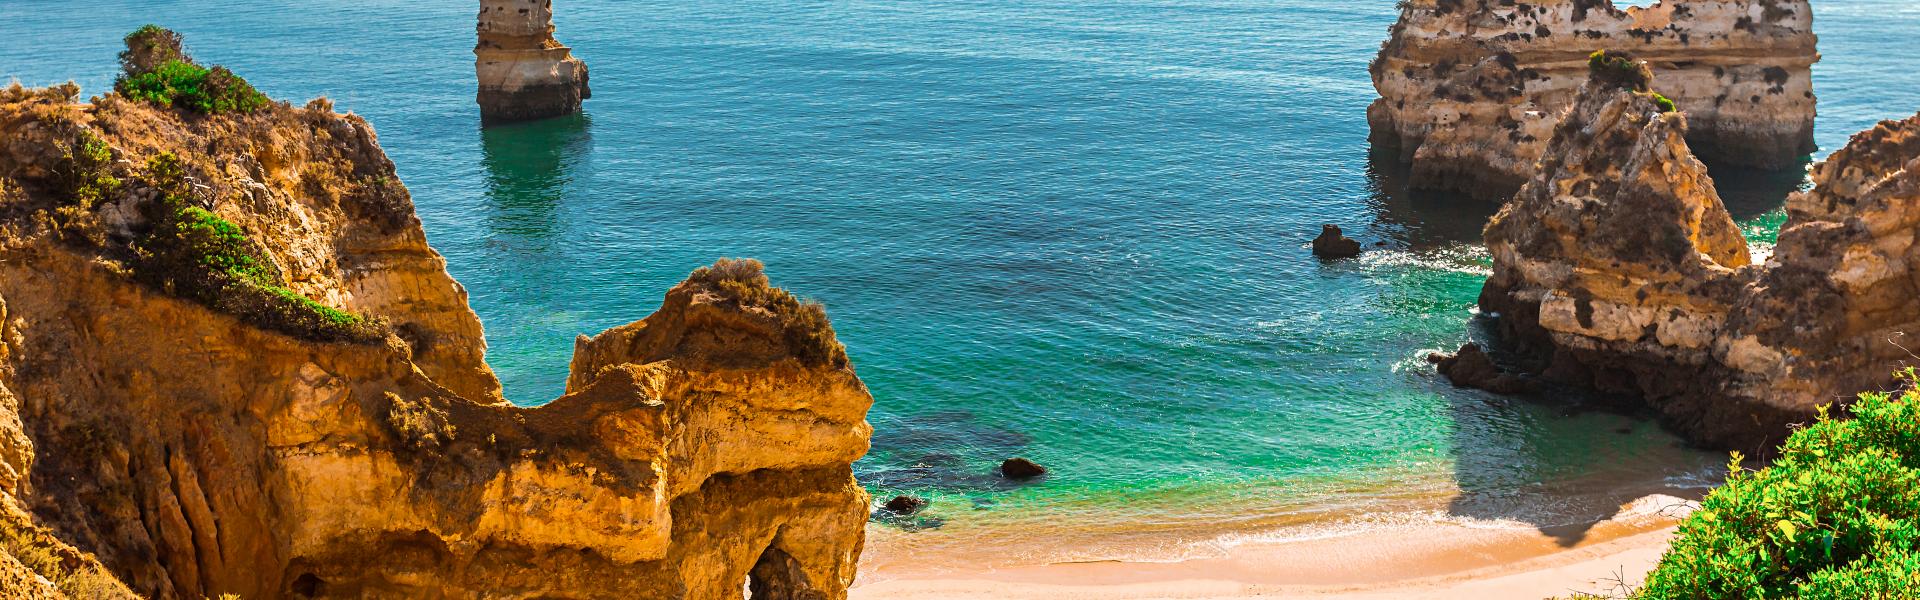 Ferienwohnungen & Ferienhäuser für Urlaub an der Costa Verde in Portugal - Casamundo